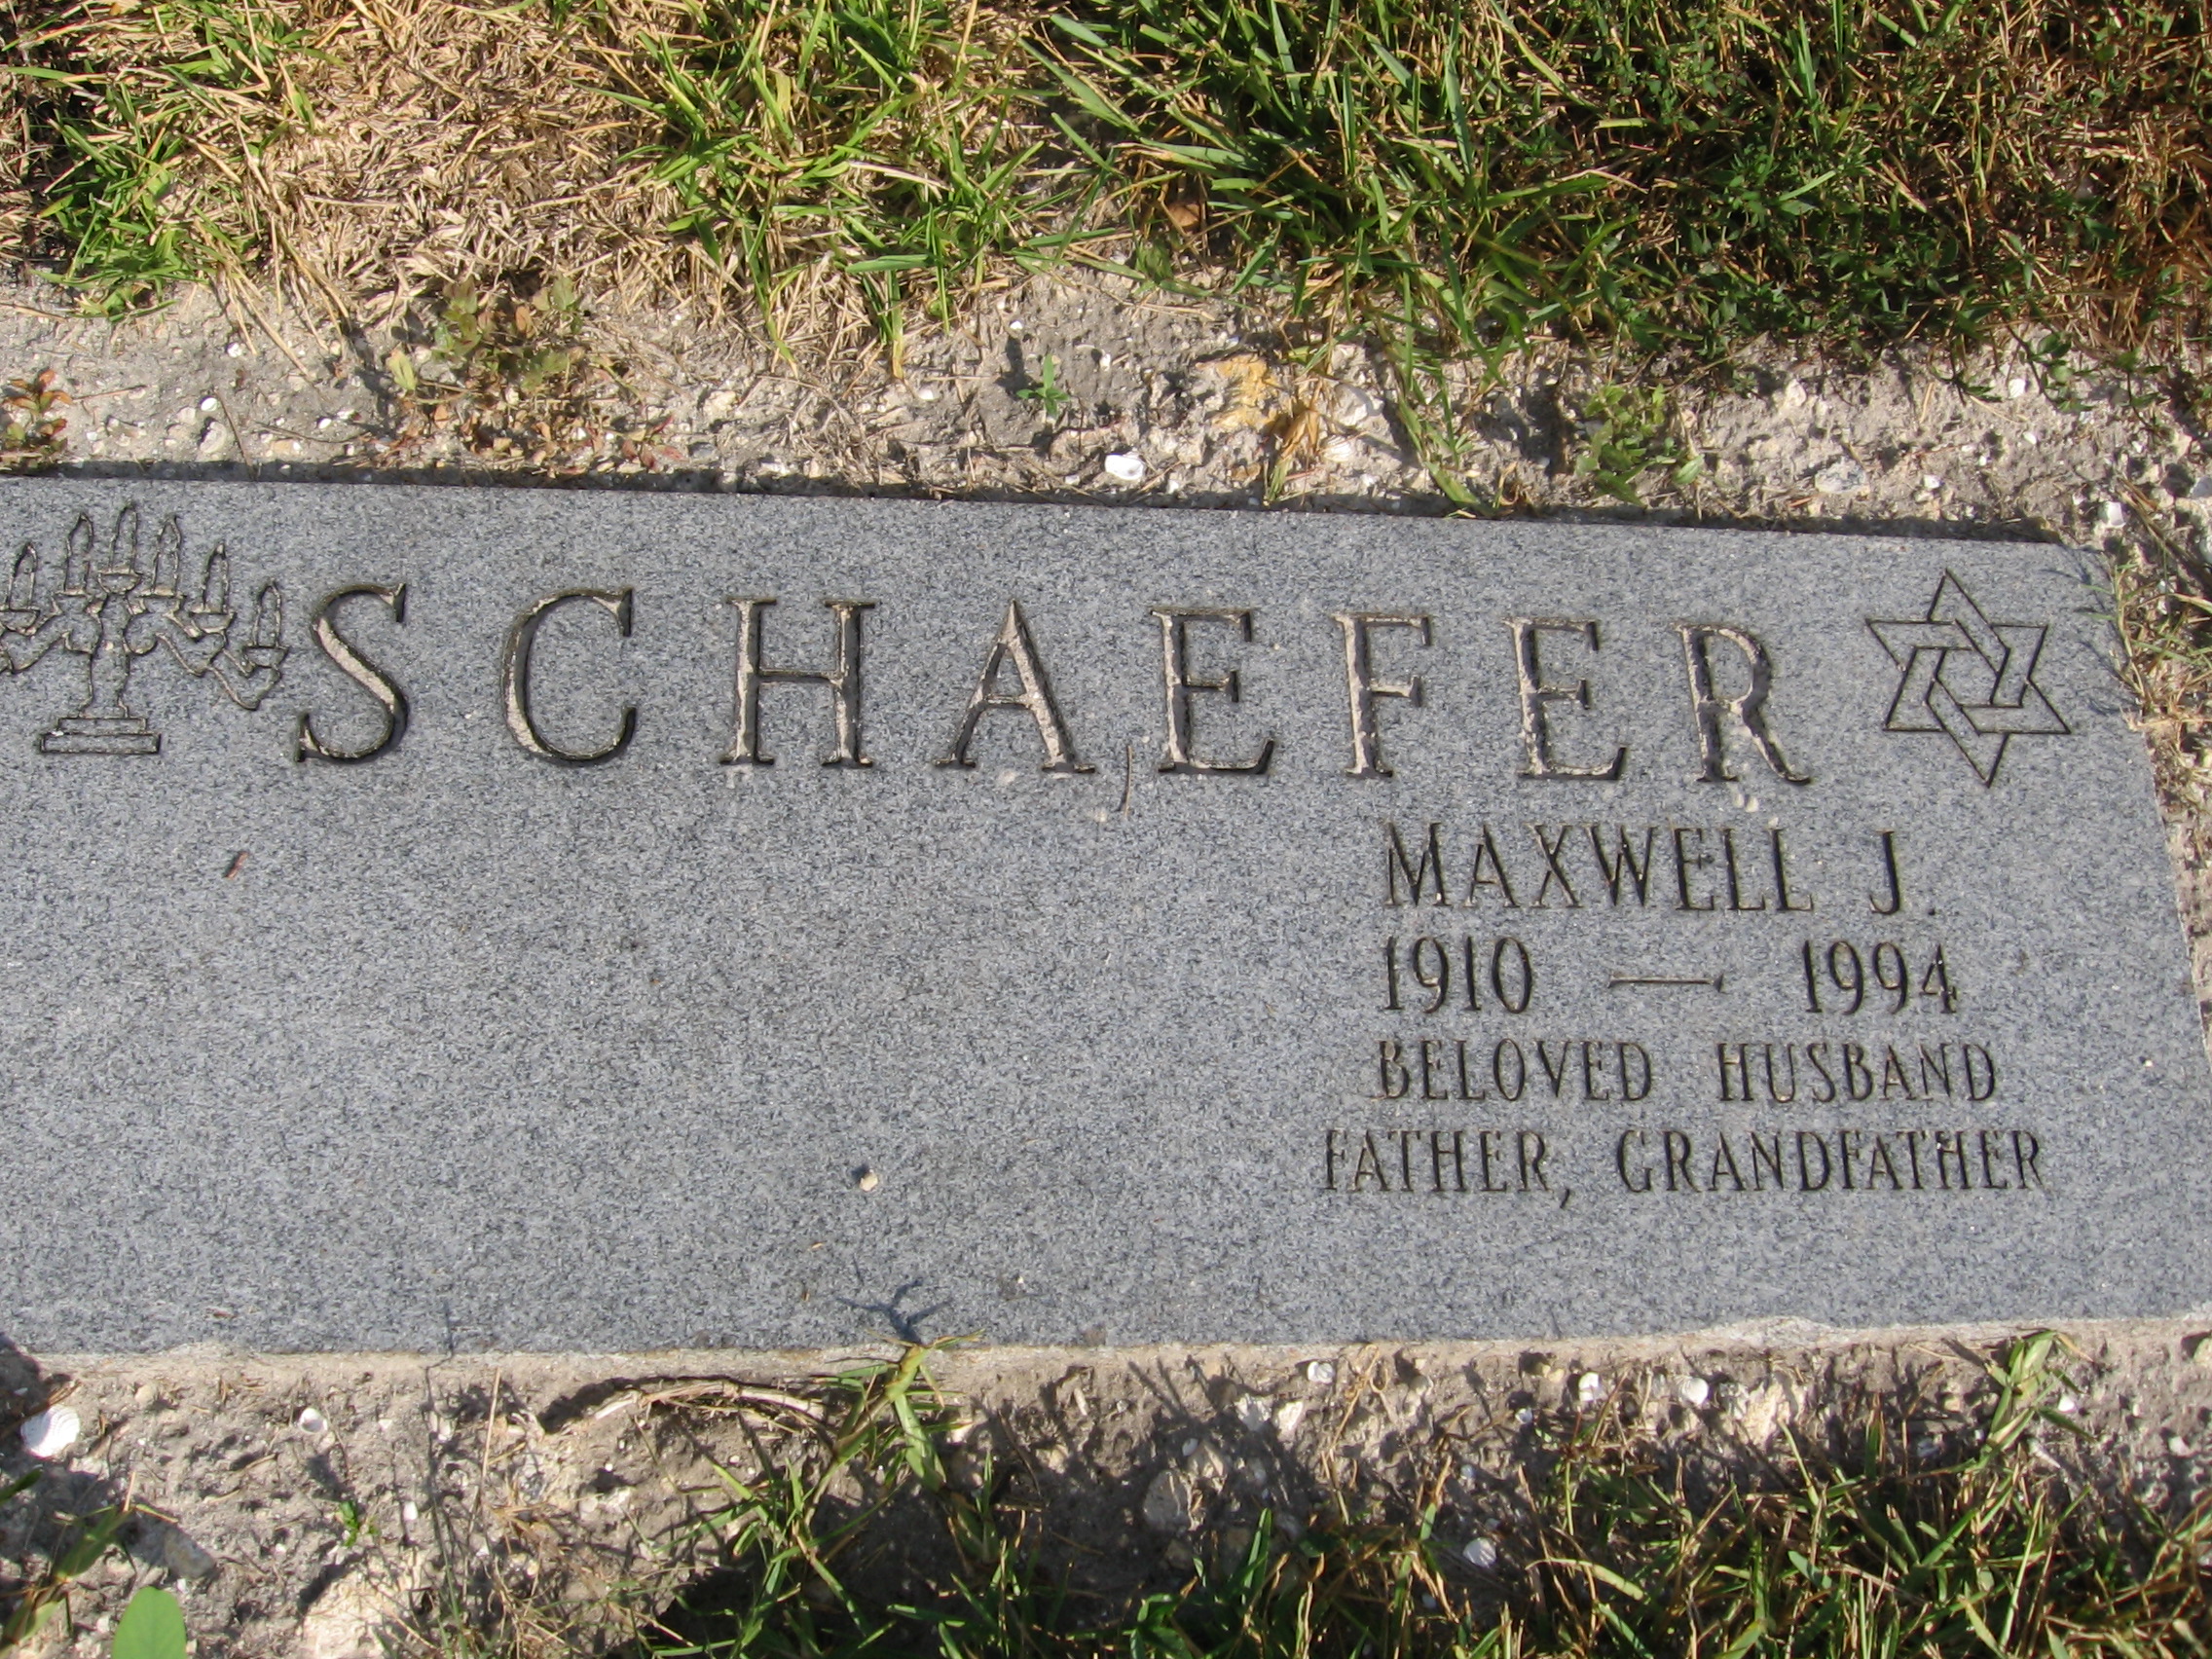 Maxwell J Schaefer